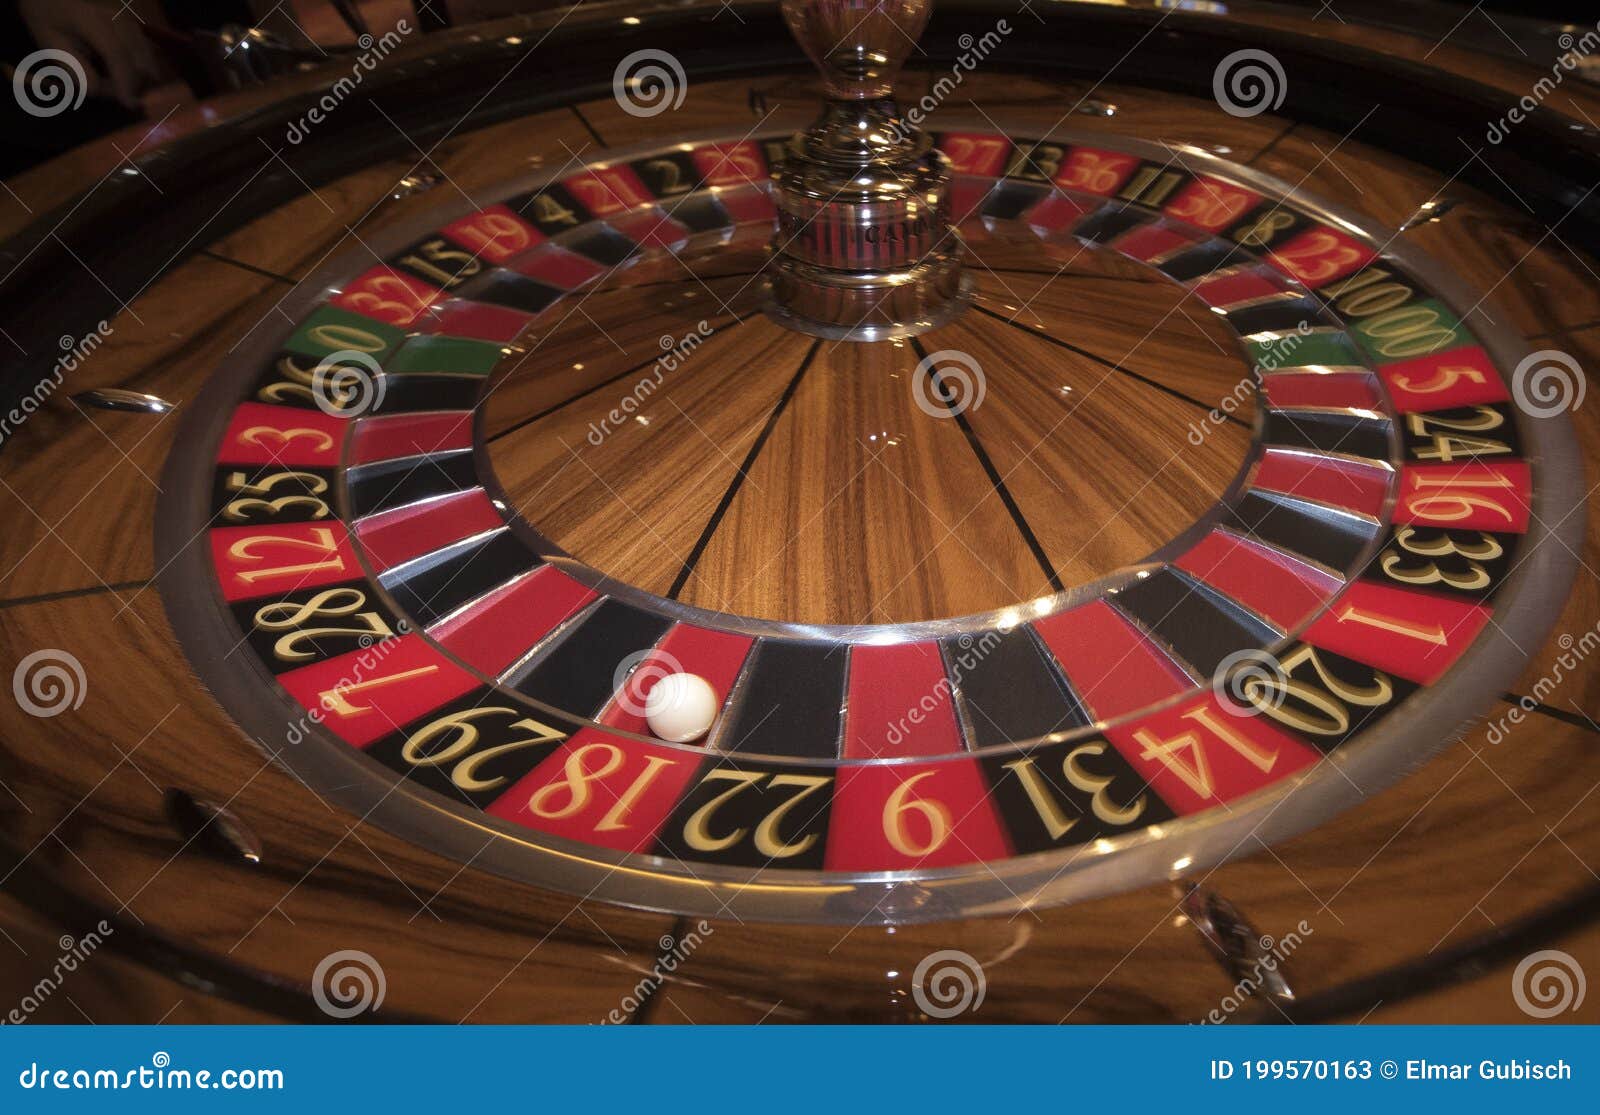 10 consejos casino en lineakeyword# de bricolaje que puede haberse perdido